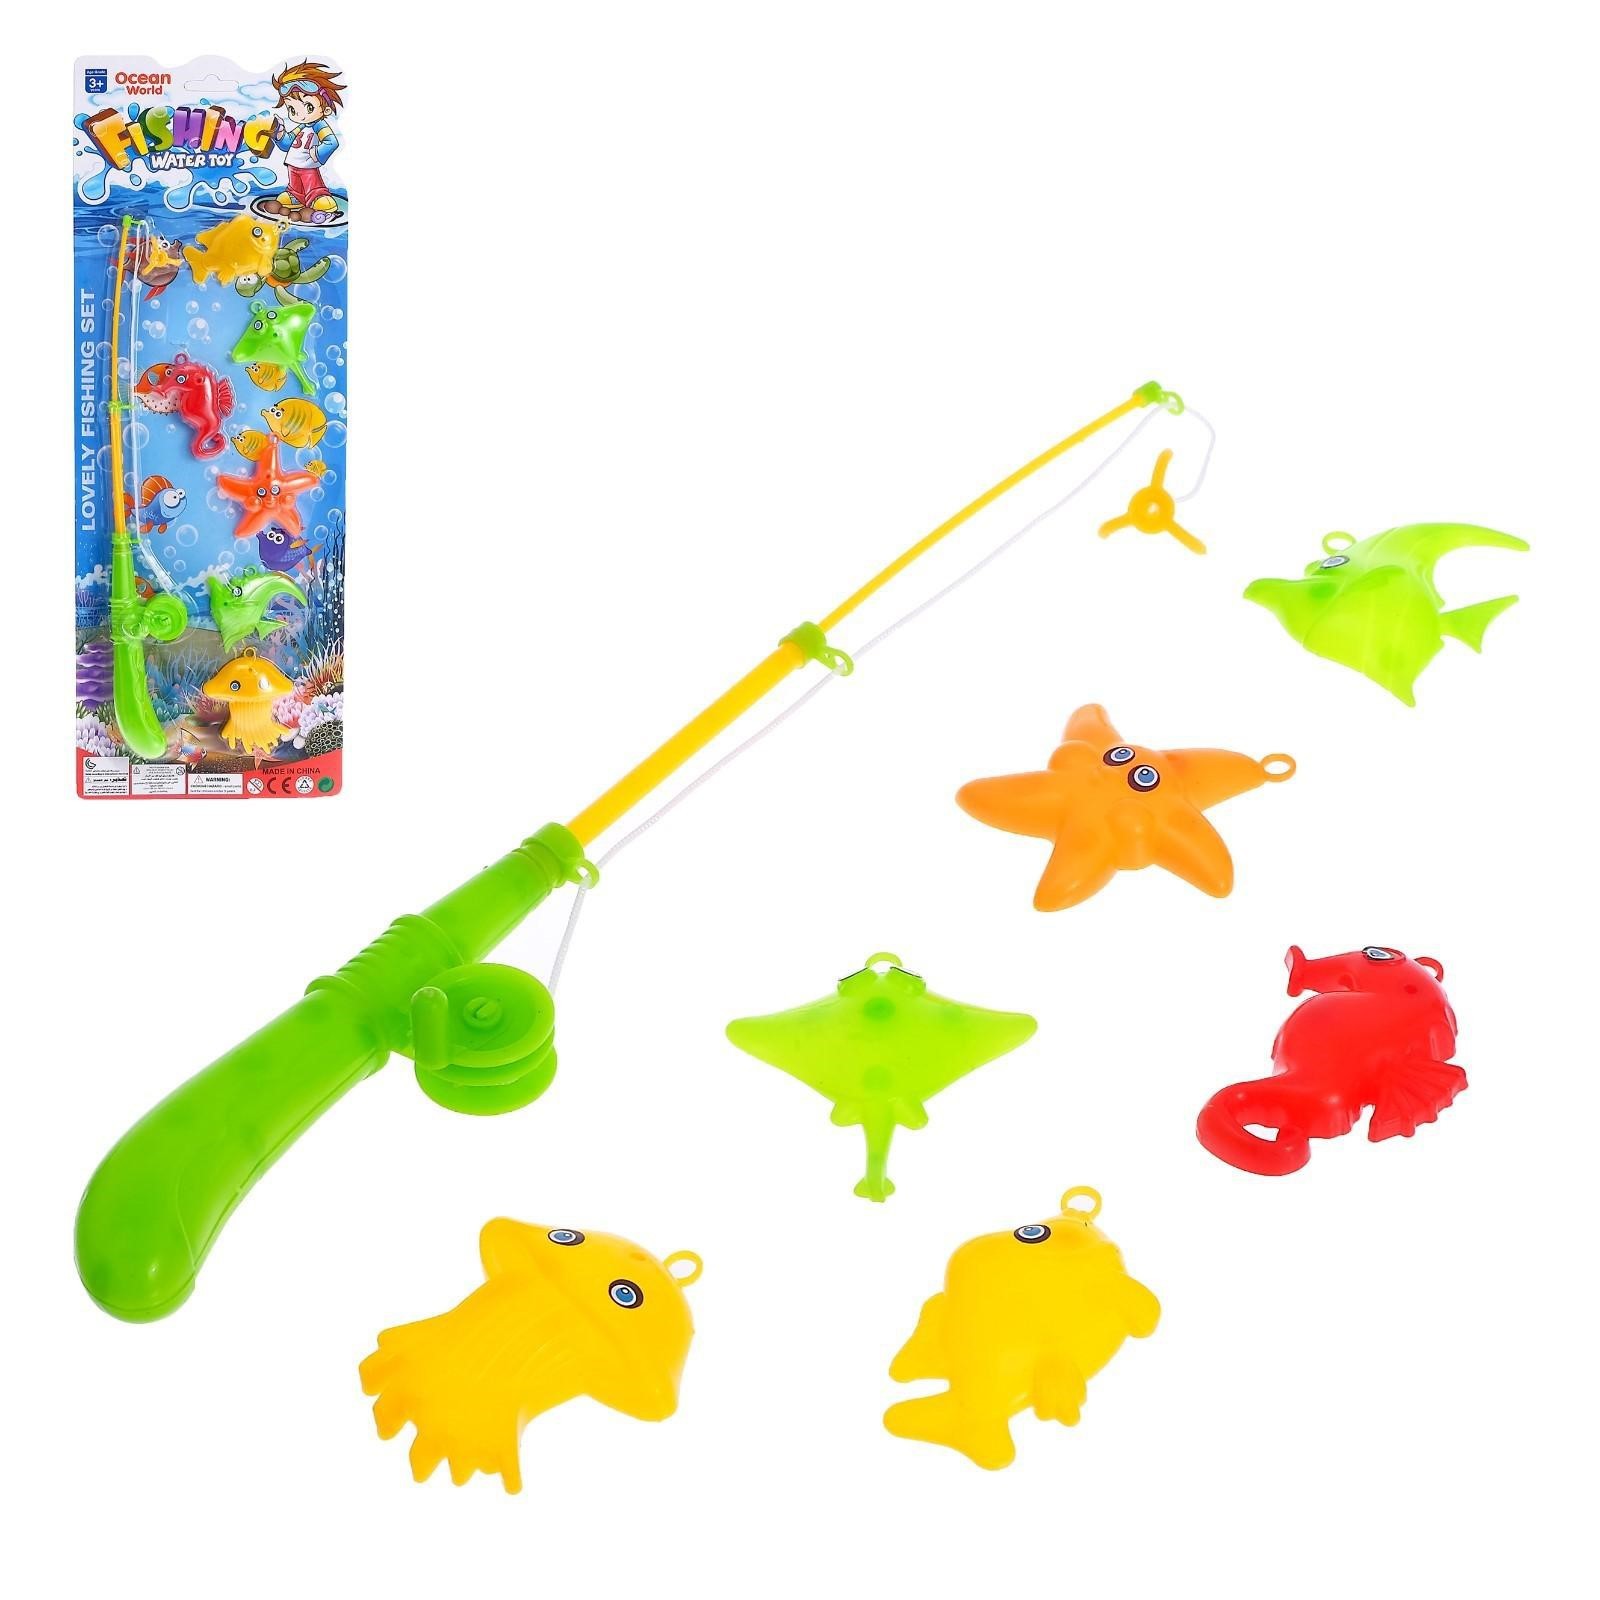 Игра рыбалка лови рыбу рыбалка. Рыбалка «Ловись рыбка»: удочка, 6 рыбок микс. Удочка рыбалка игрушки Toys 555 555. Бирюлька Shantou Gepai Ловись рыбка 685-09. Игрушка удочка с рыбками.